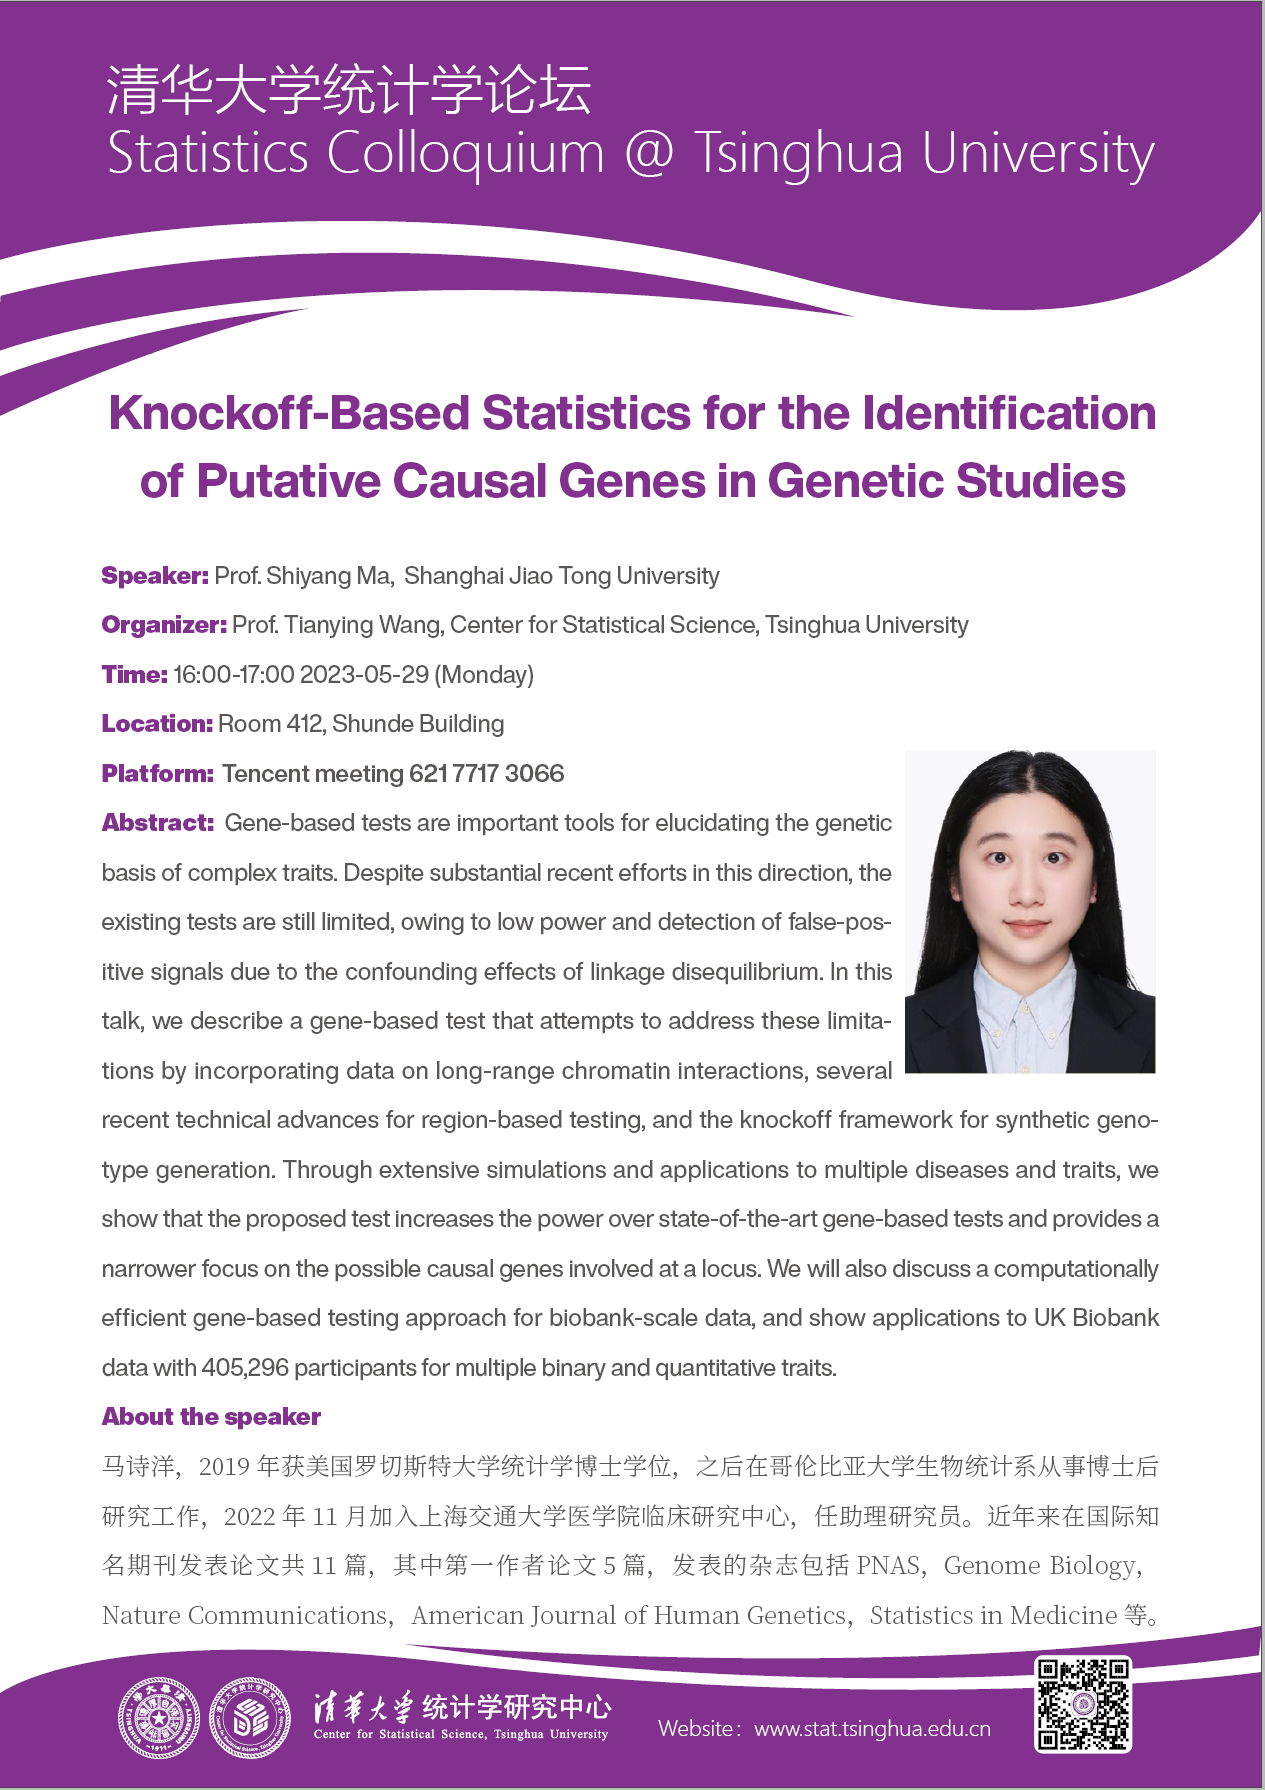 【统计学论坛】Knockoff-Based Statistics for the Identification of Putative Causal Genes in Genetic Studies